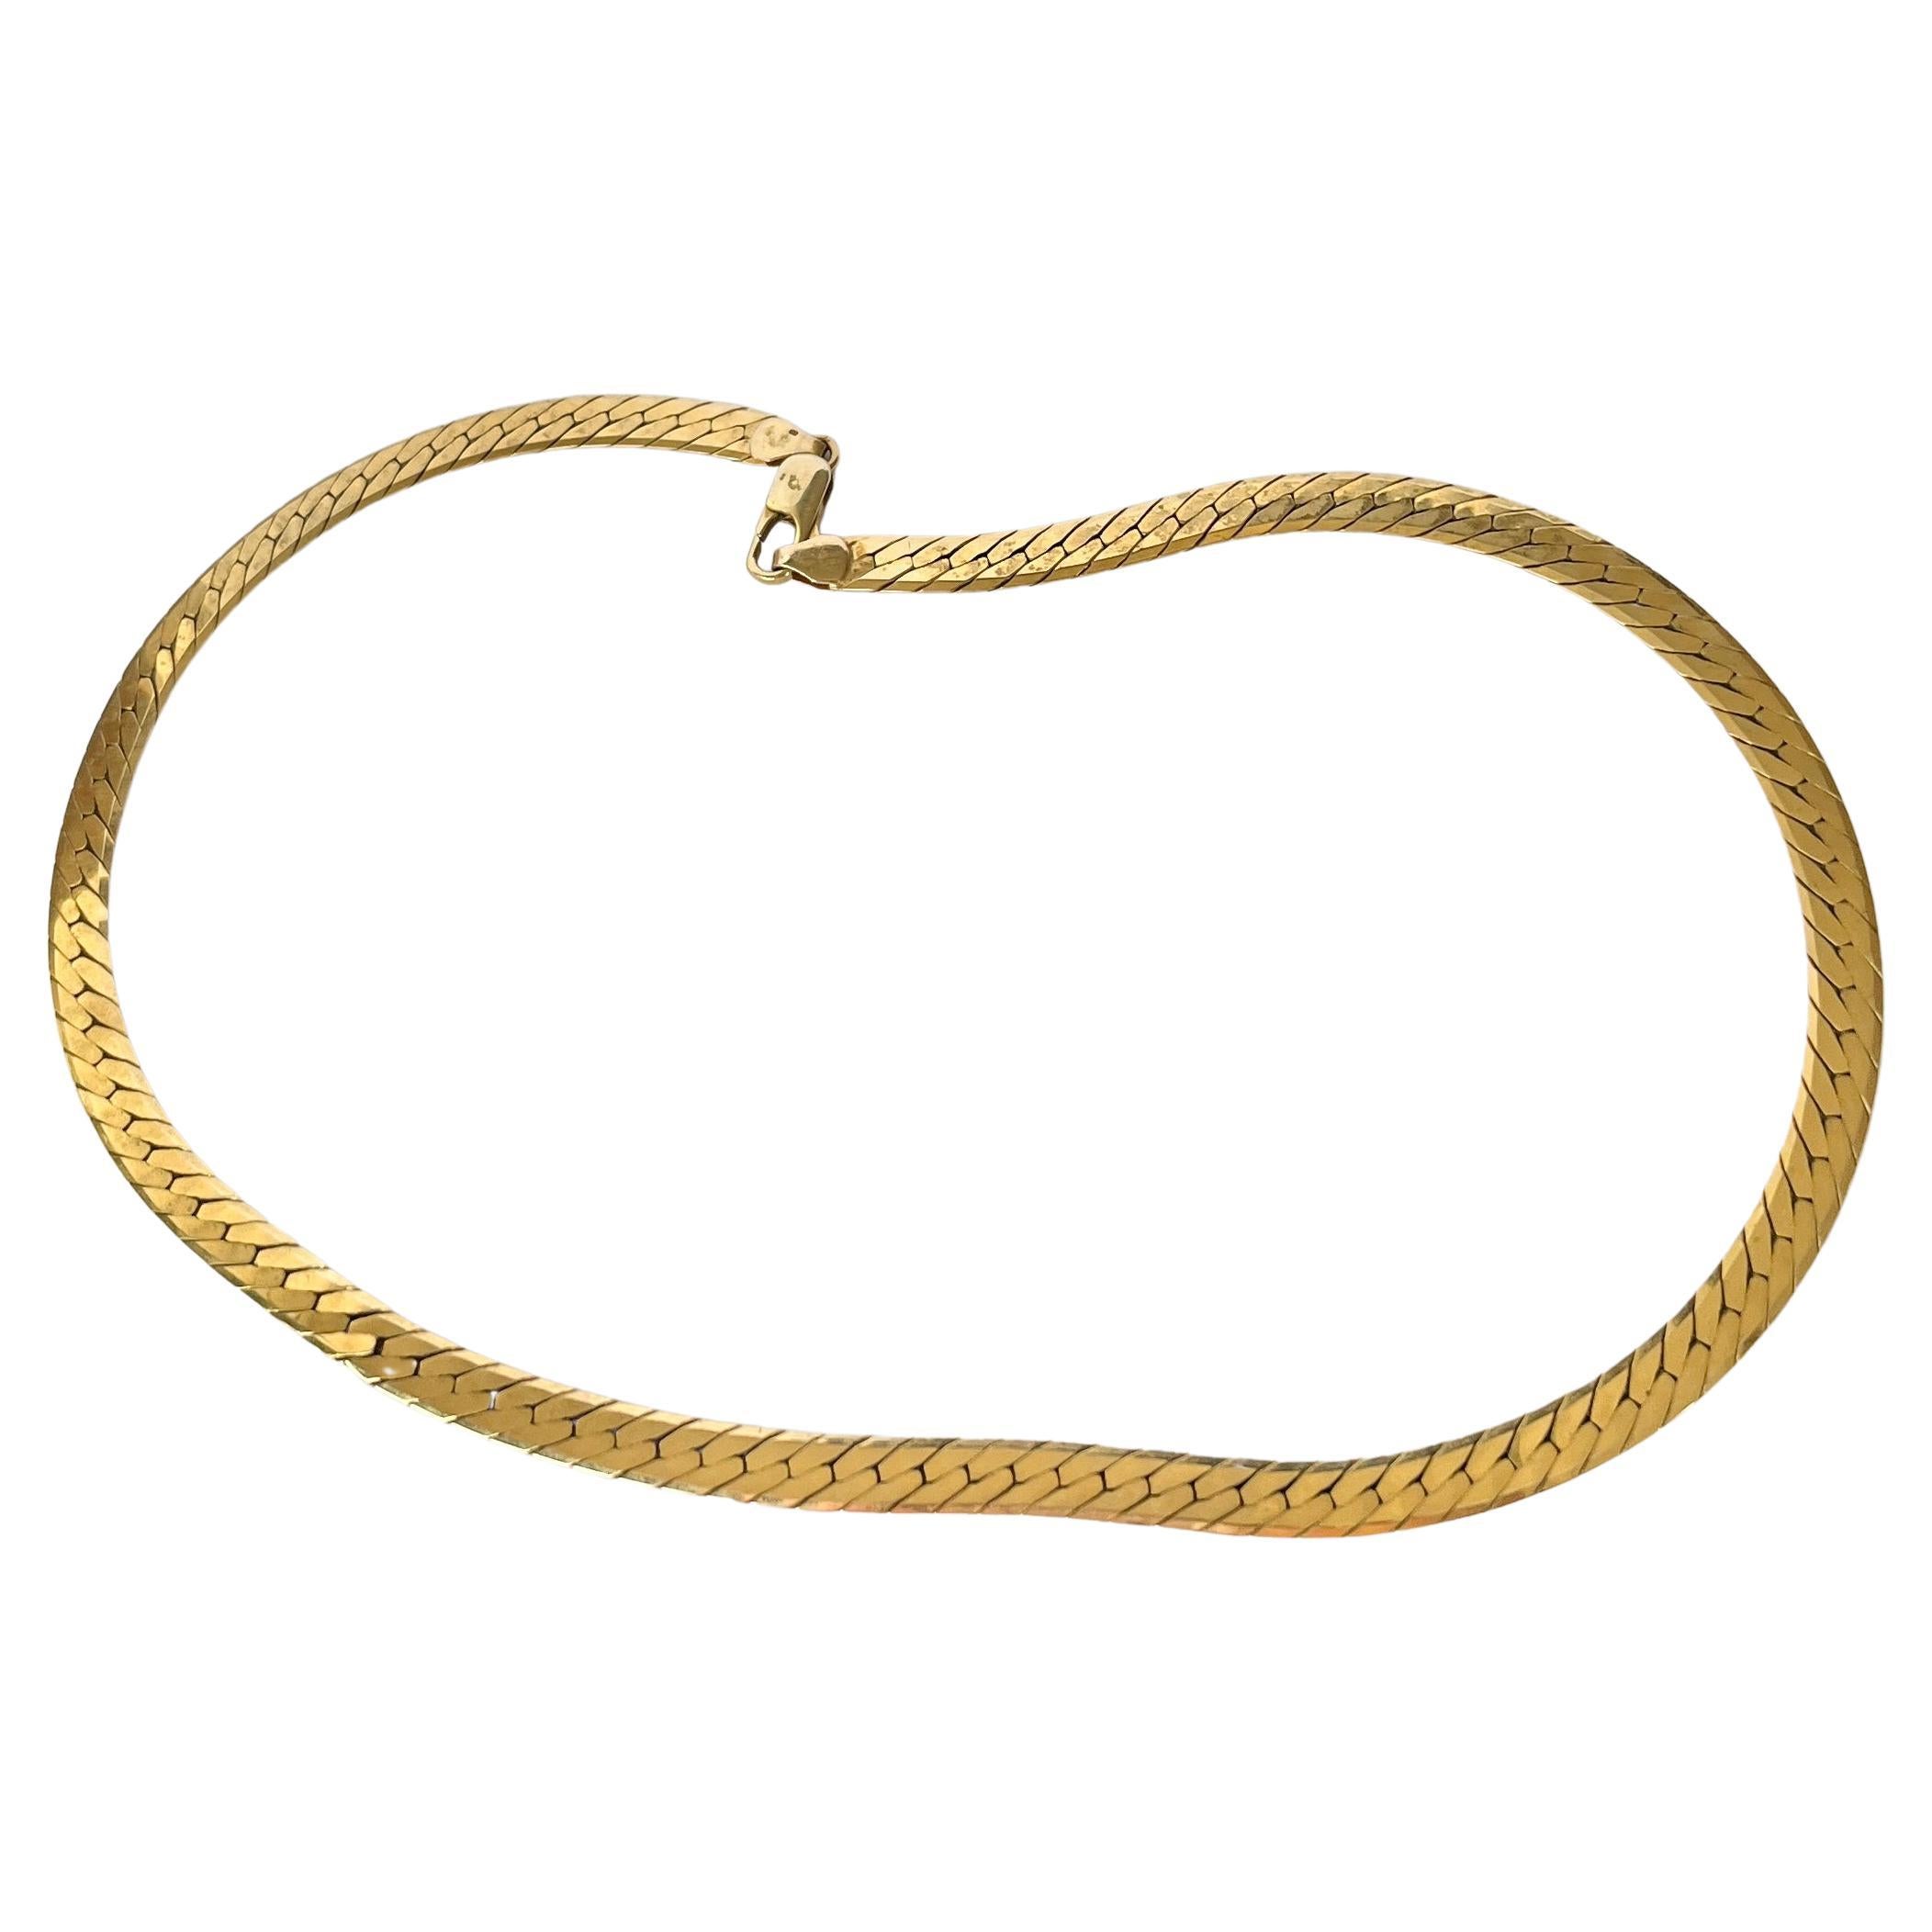 Grinsell & Sons Collier à chaîne vintage en or 9 carats avec chaîne